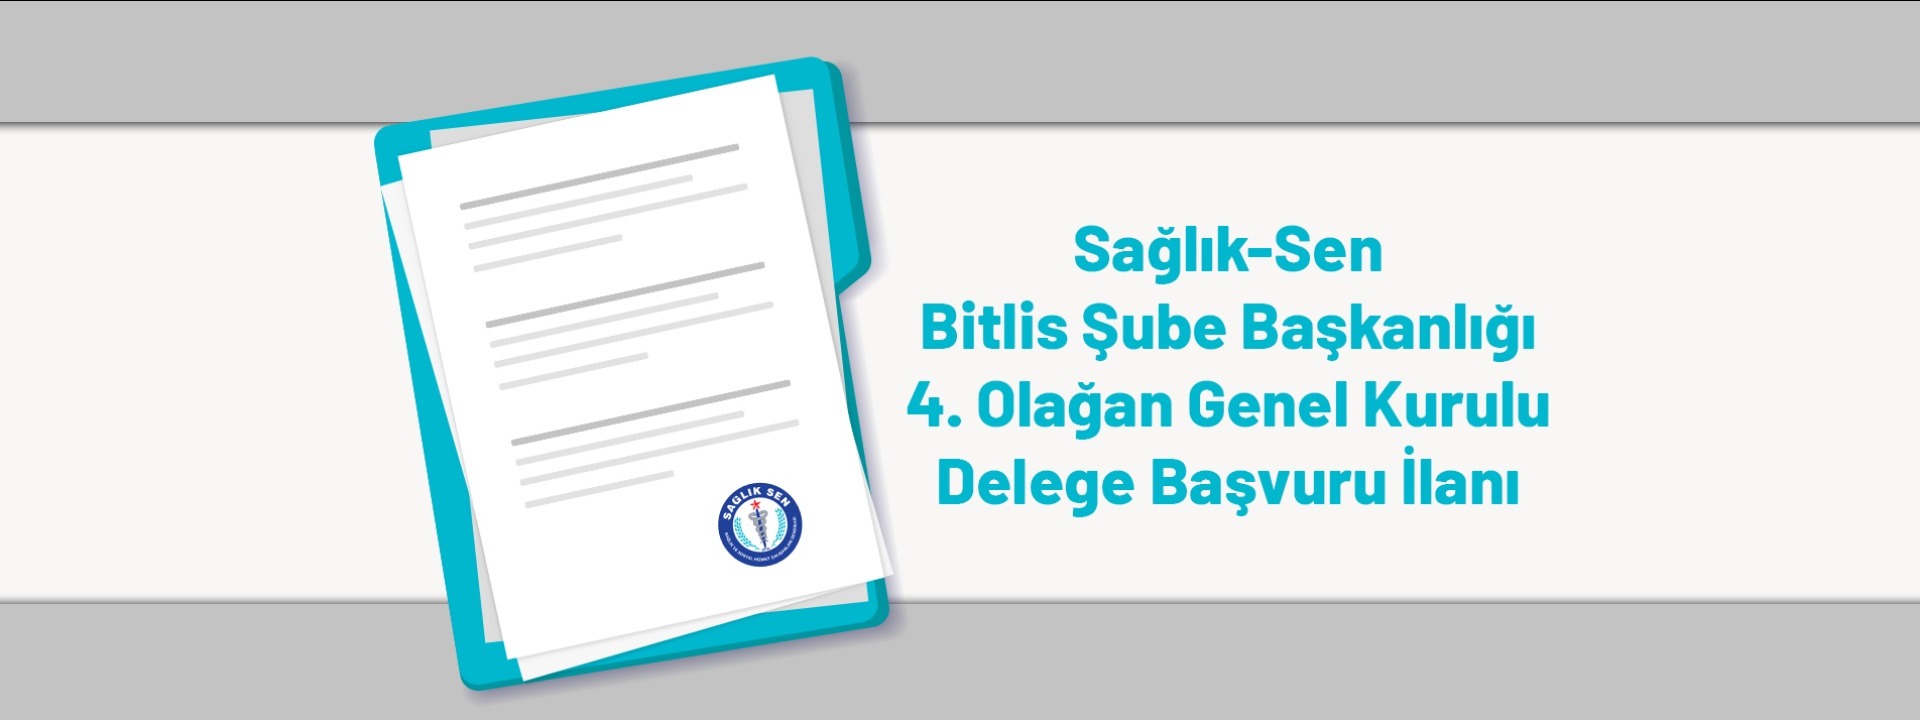 Sağlık-Sen Bitlis Şube Başkanlığı 4. Olağan Genel Kurulu Delege Başvuru İlanı